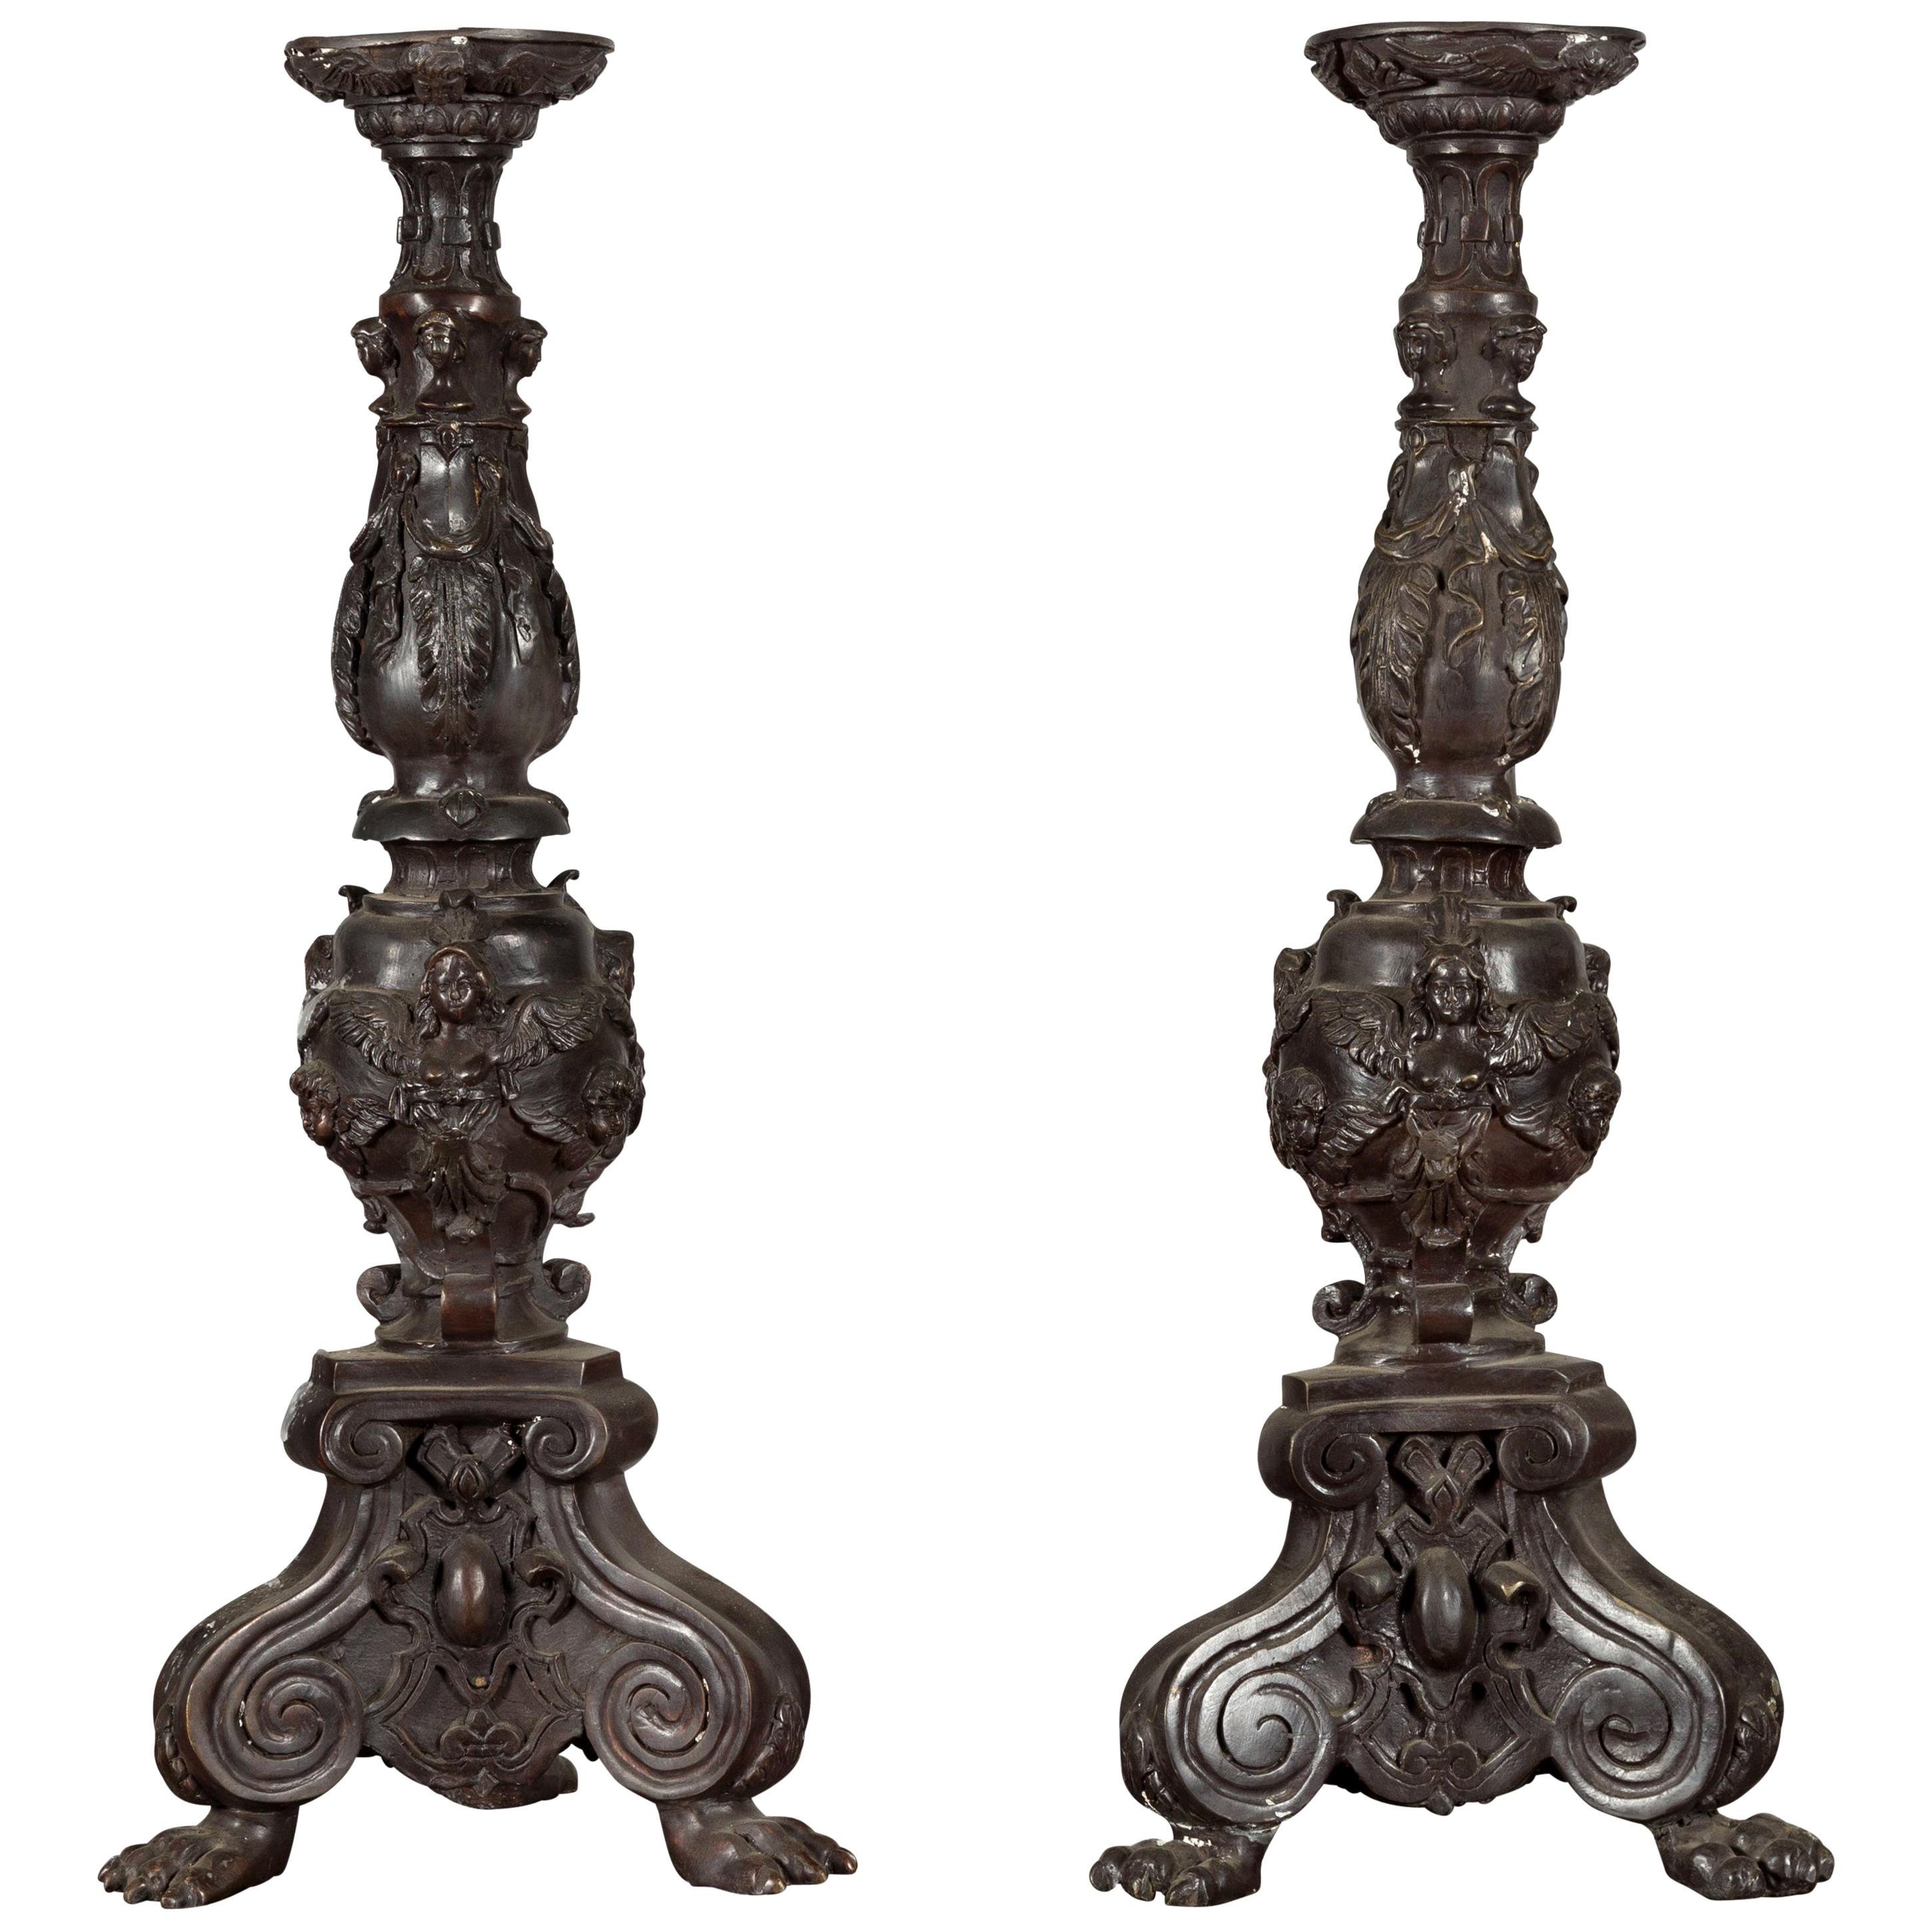 Paire de chandeliers de style baroque vintage en bronze moulé avec figures de chérubins